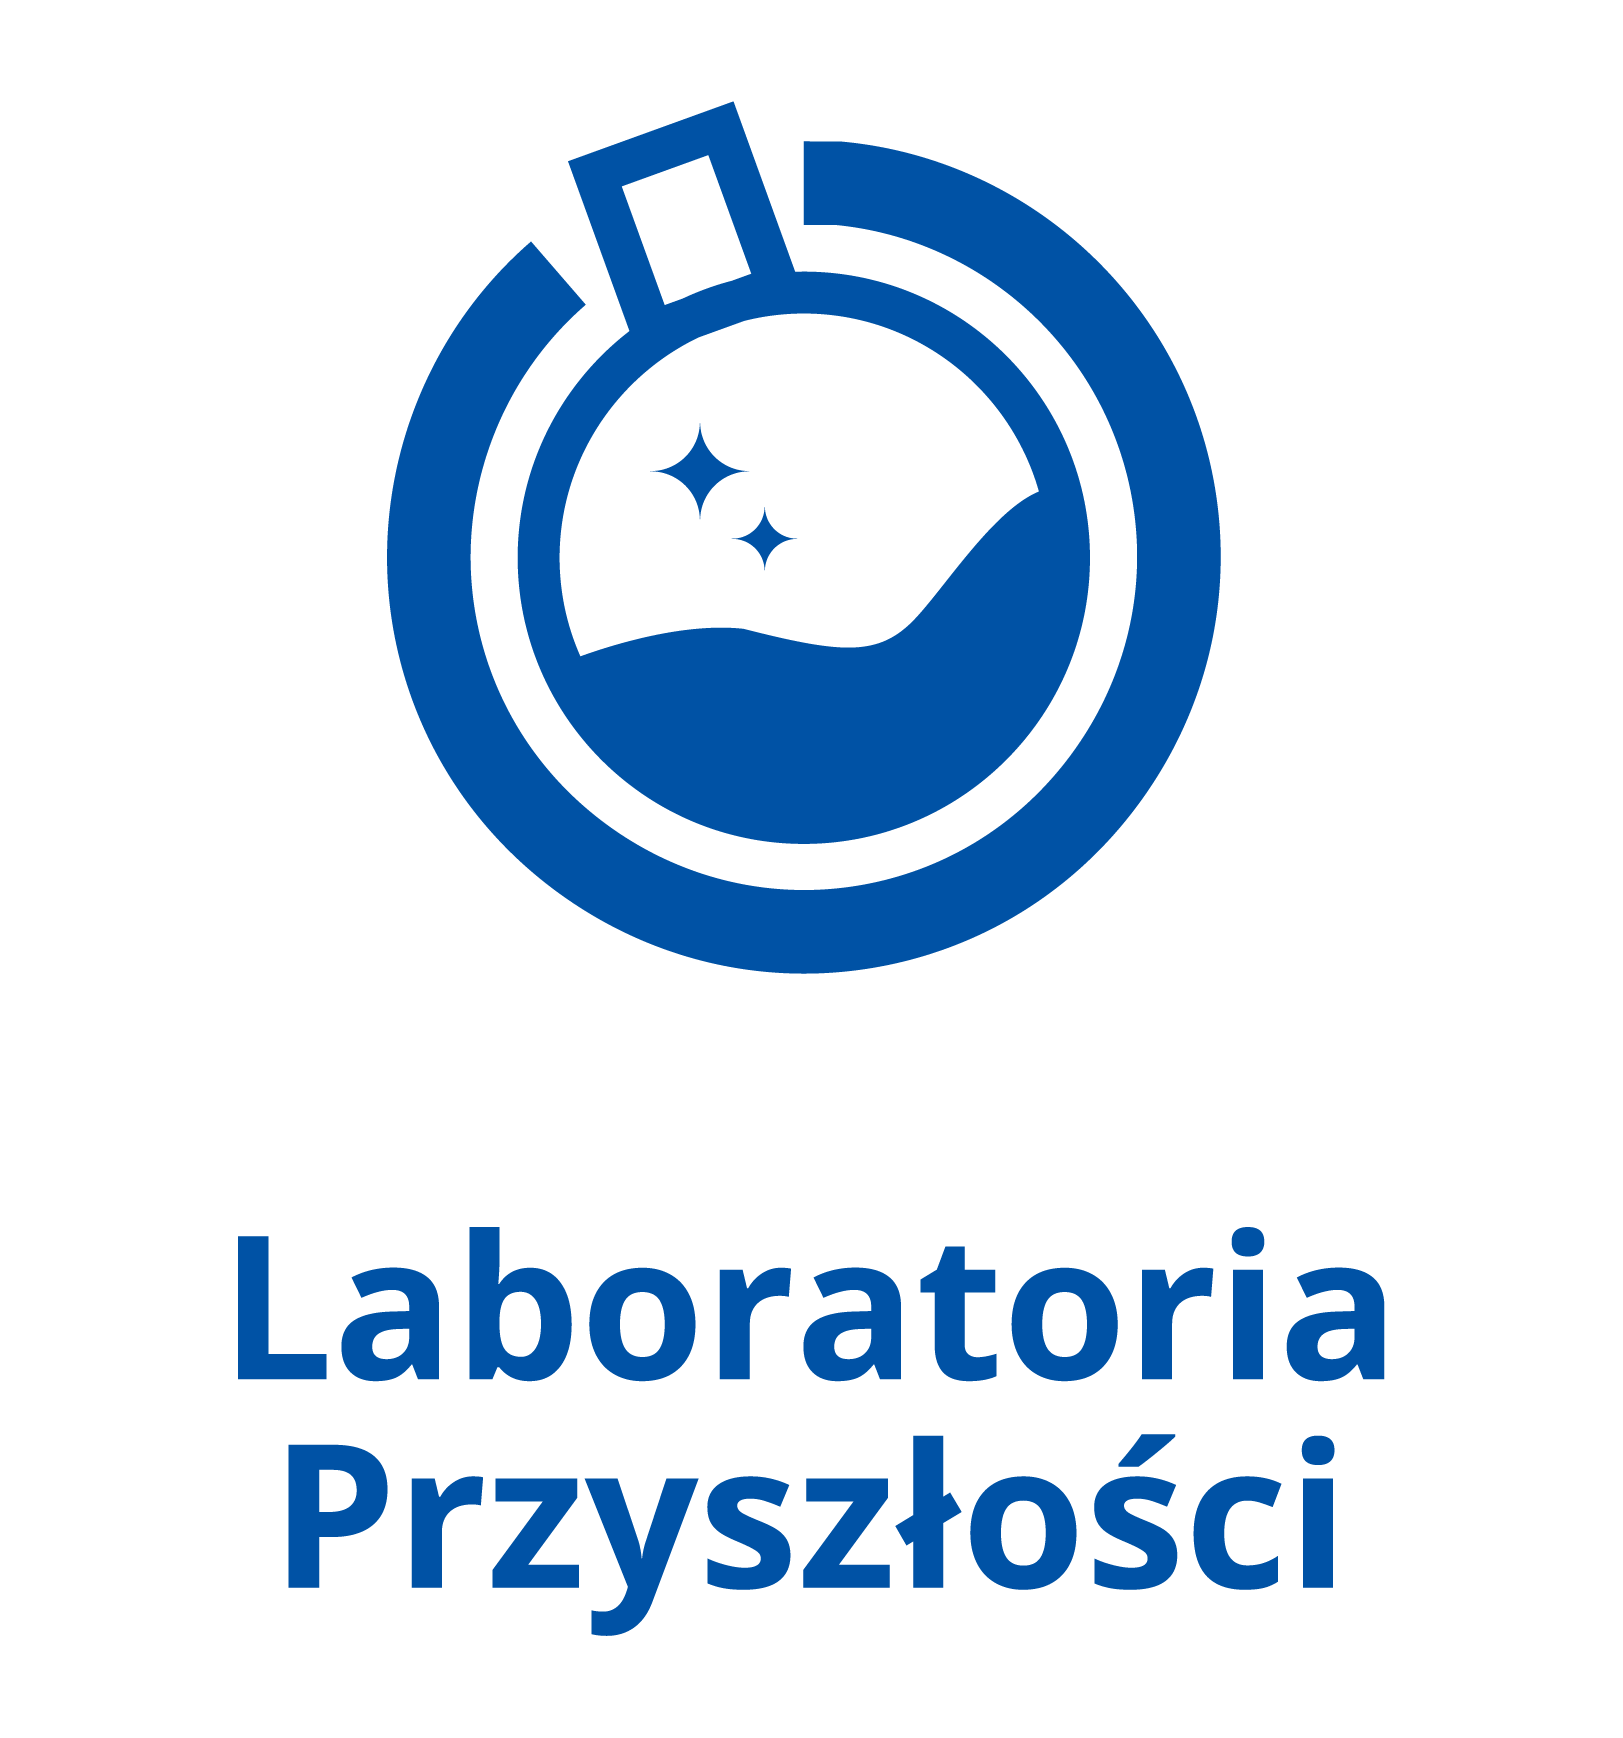 Logo programu Laboratoria Przyszłości